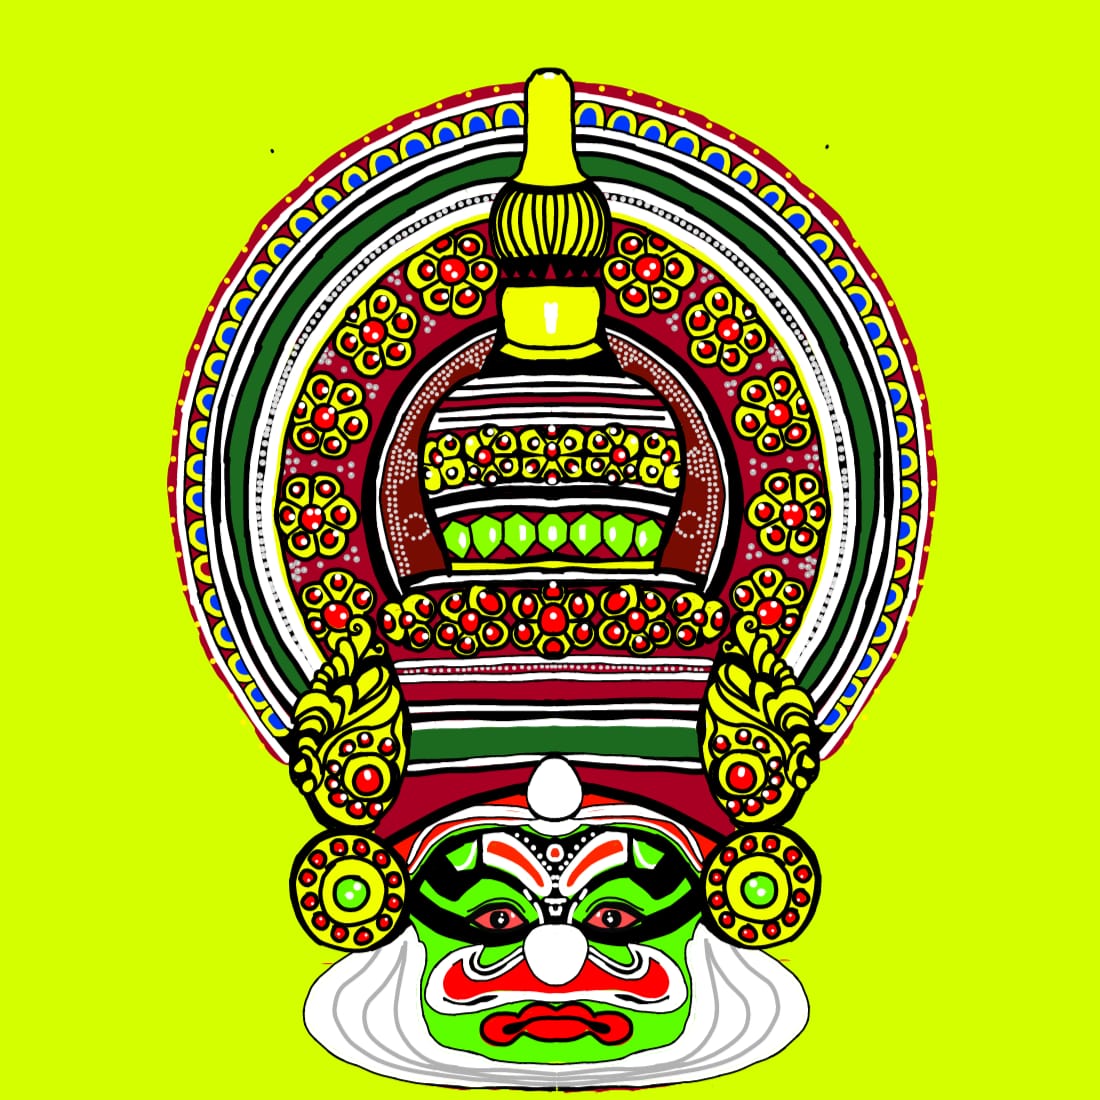 Kadhakali preview image.